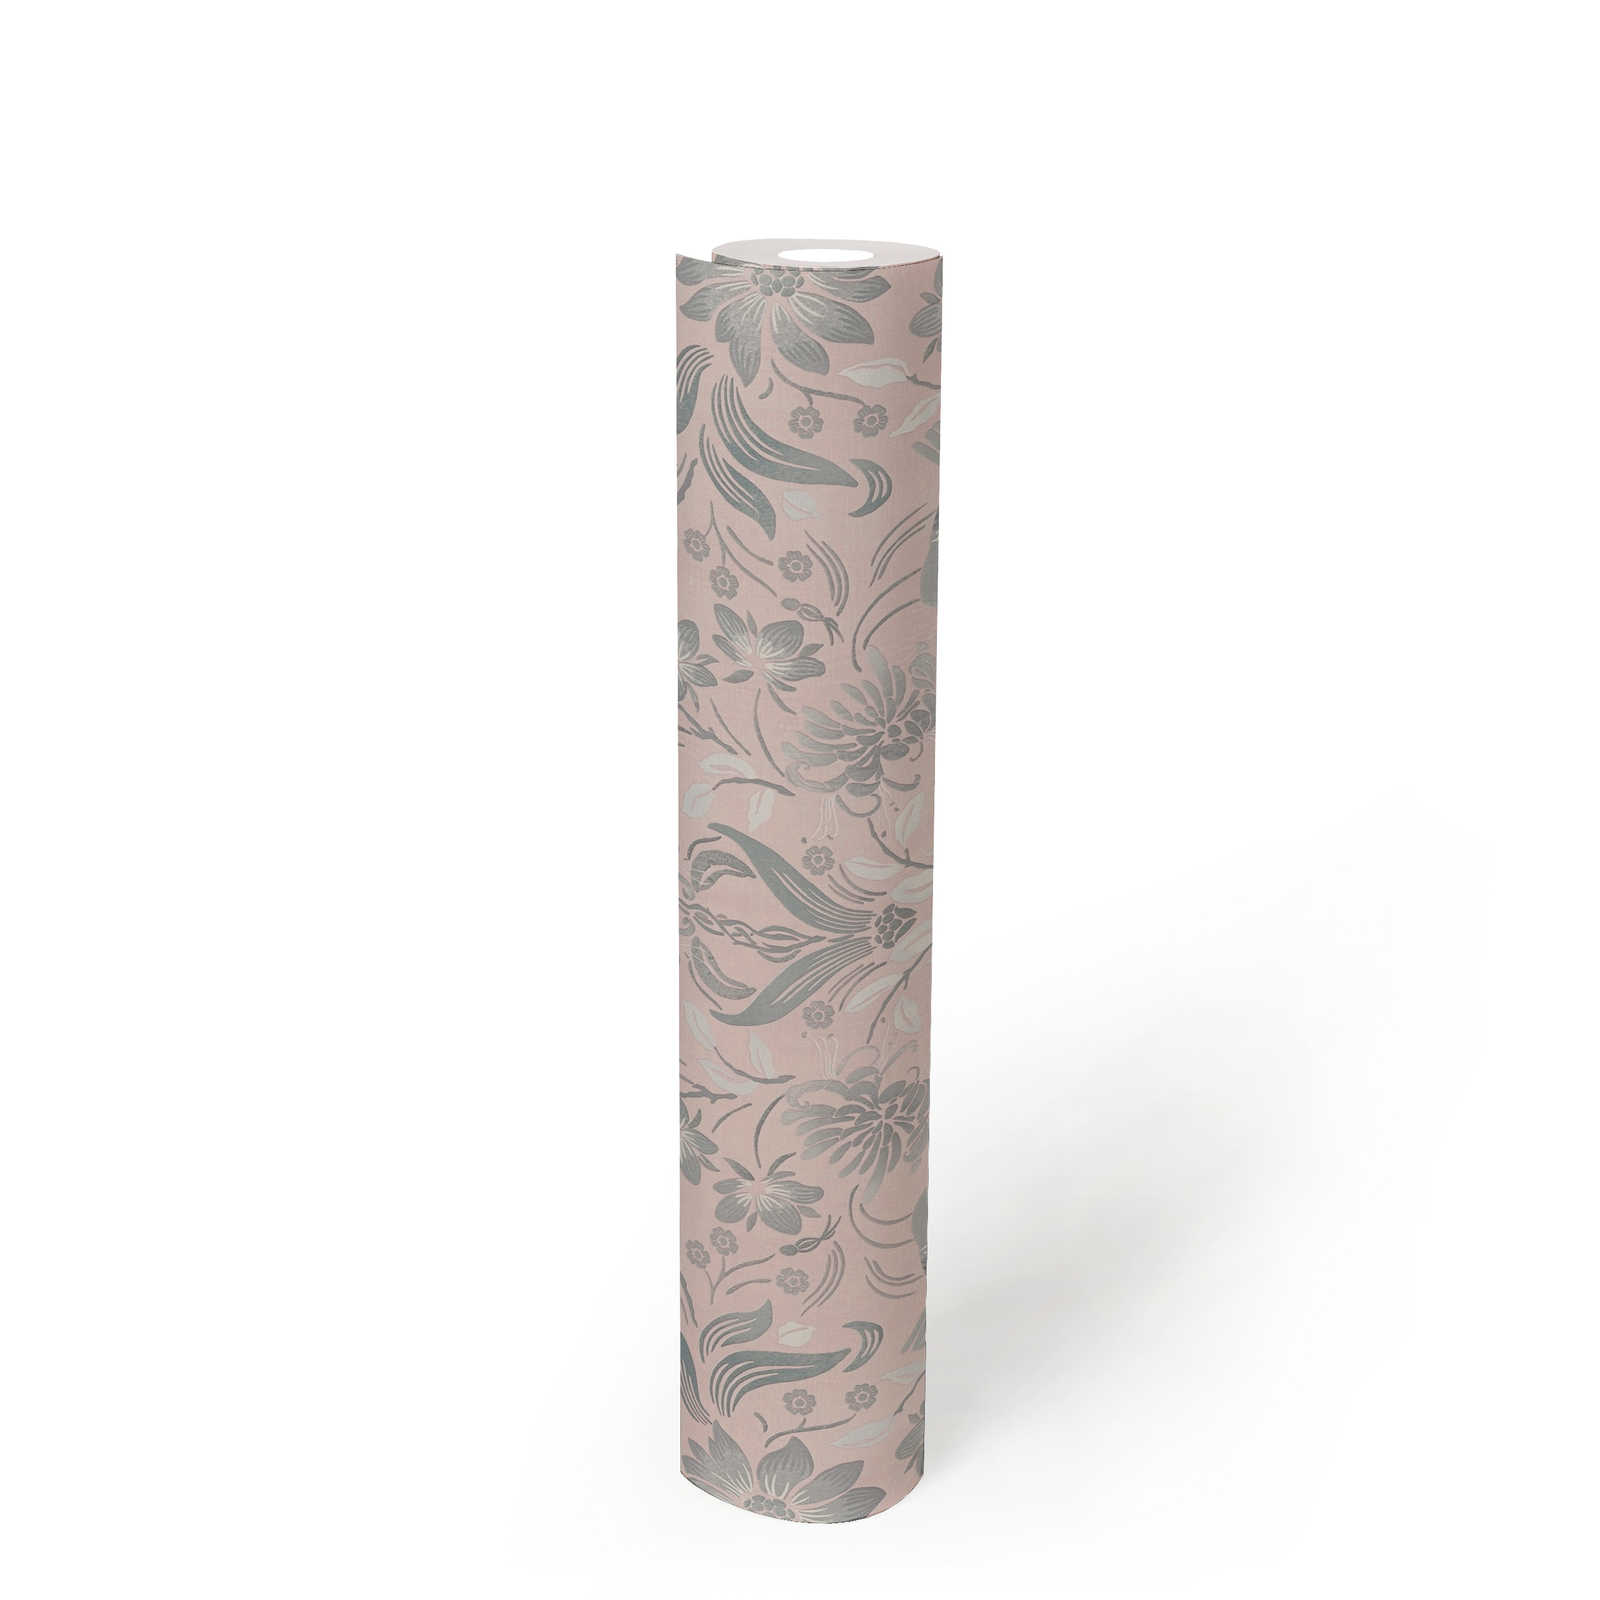             Tapete mit Vögeln und Blumenmuster – Rosa, Grau, Weiß
        